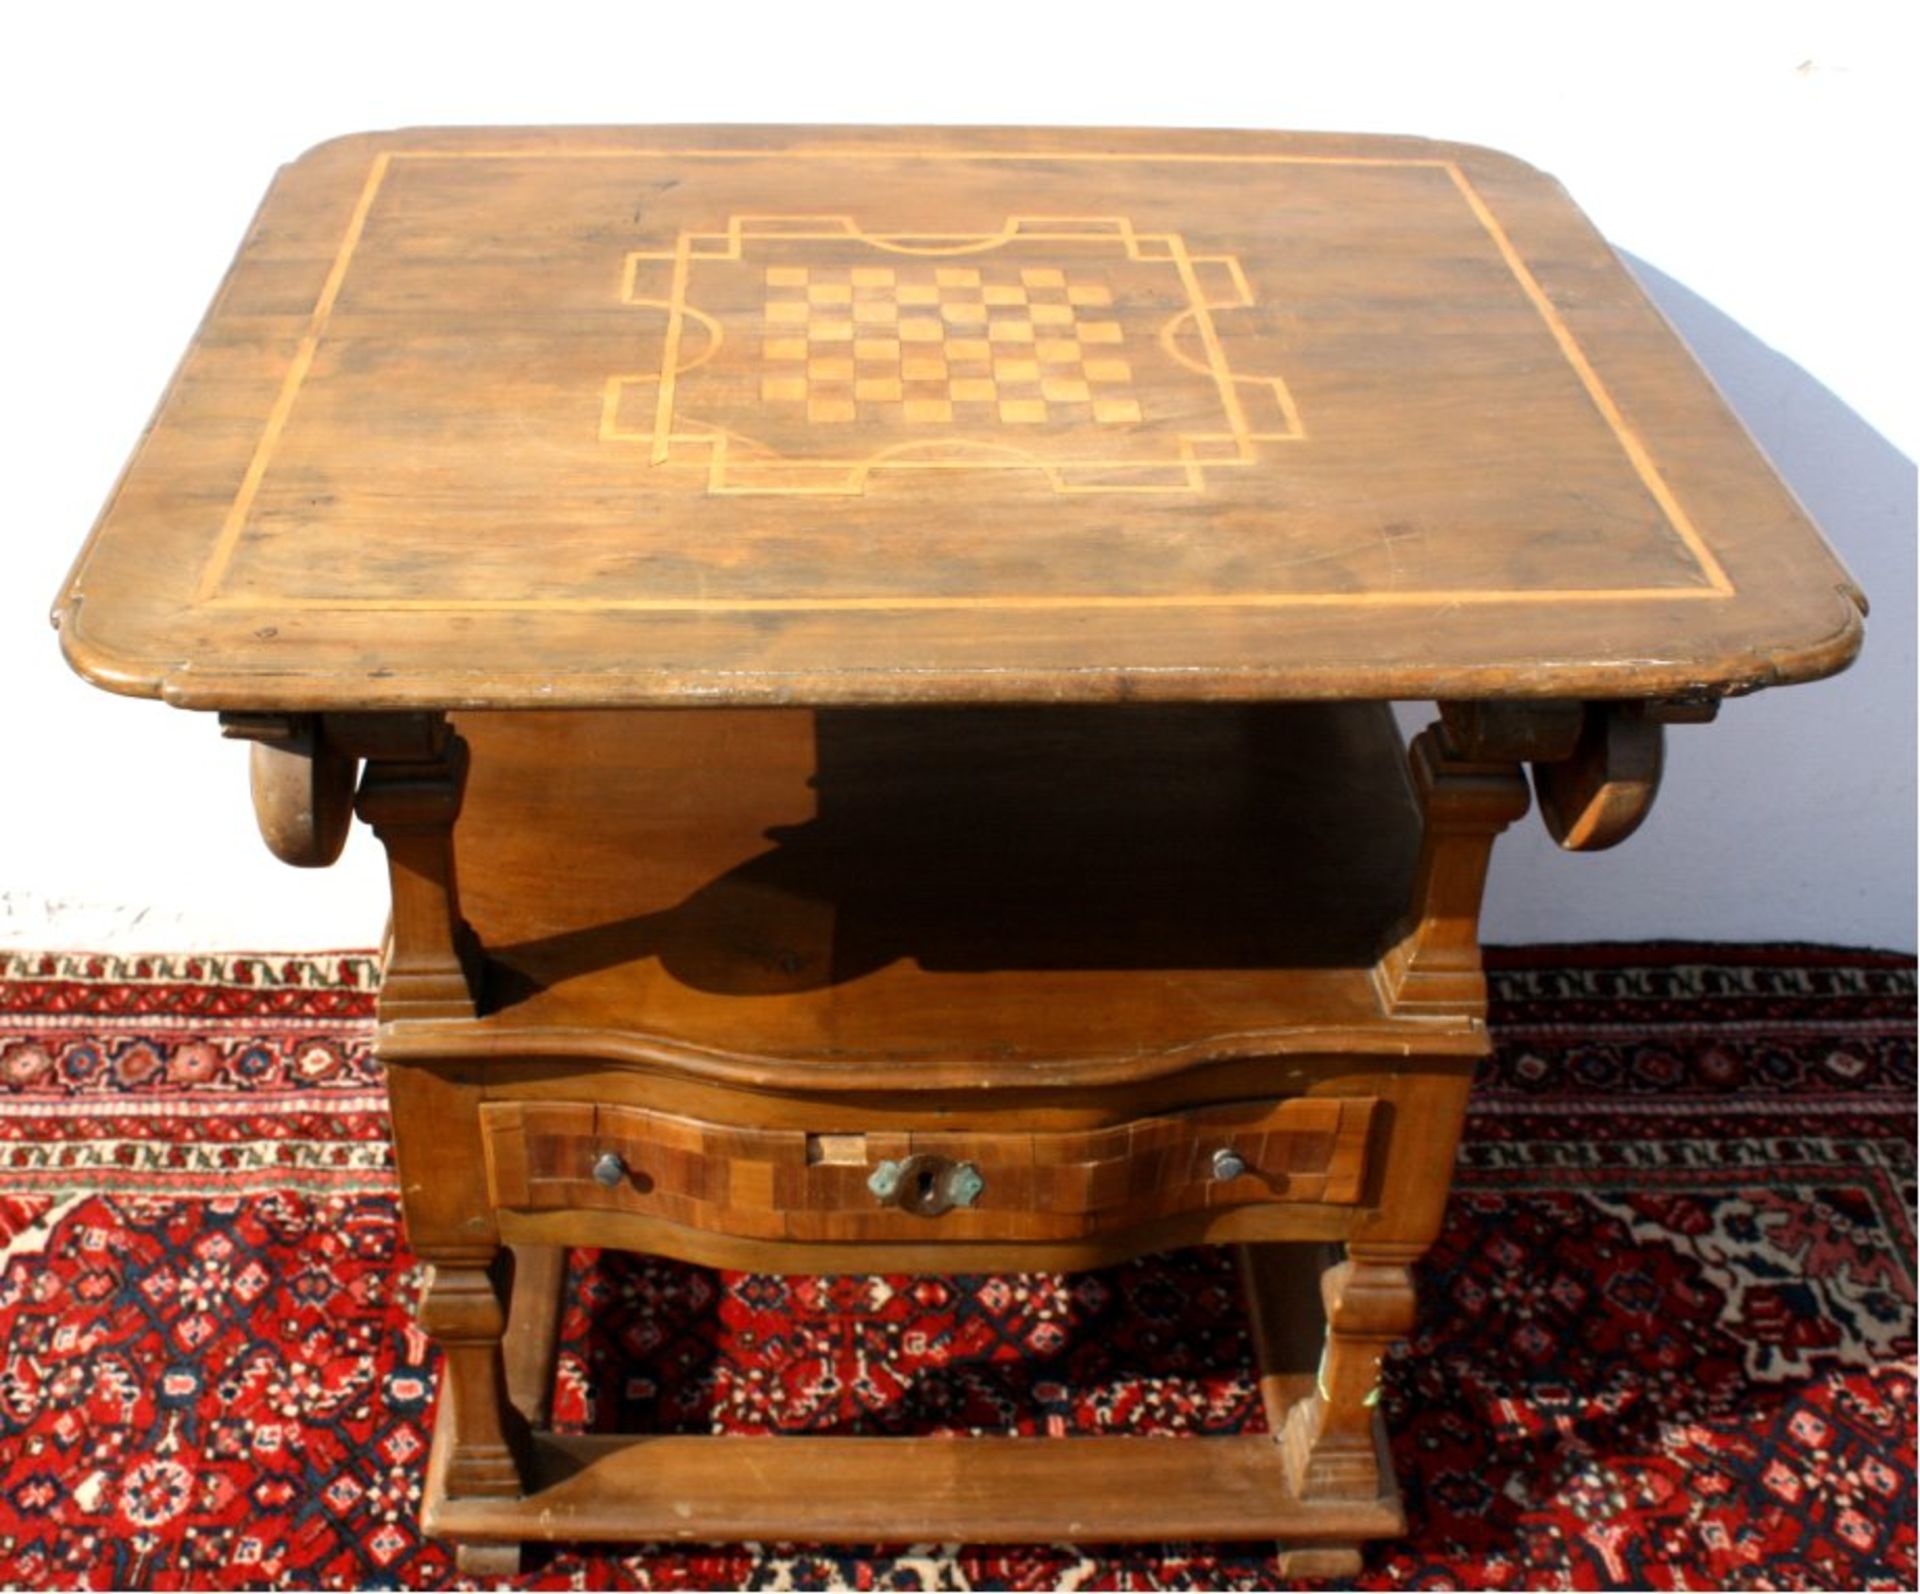 Aussergewöhnlicher Tisch mit Verwandlung zum Stuhl 17/18 Jh.massiv, intarsierter Platte, ist als